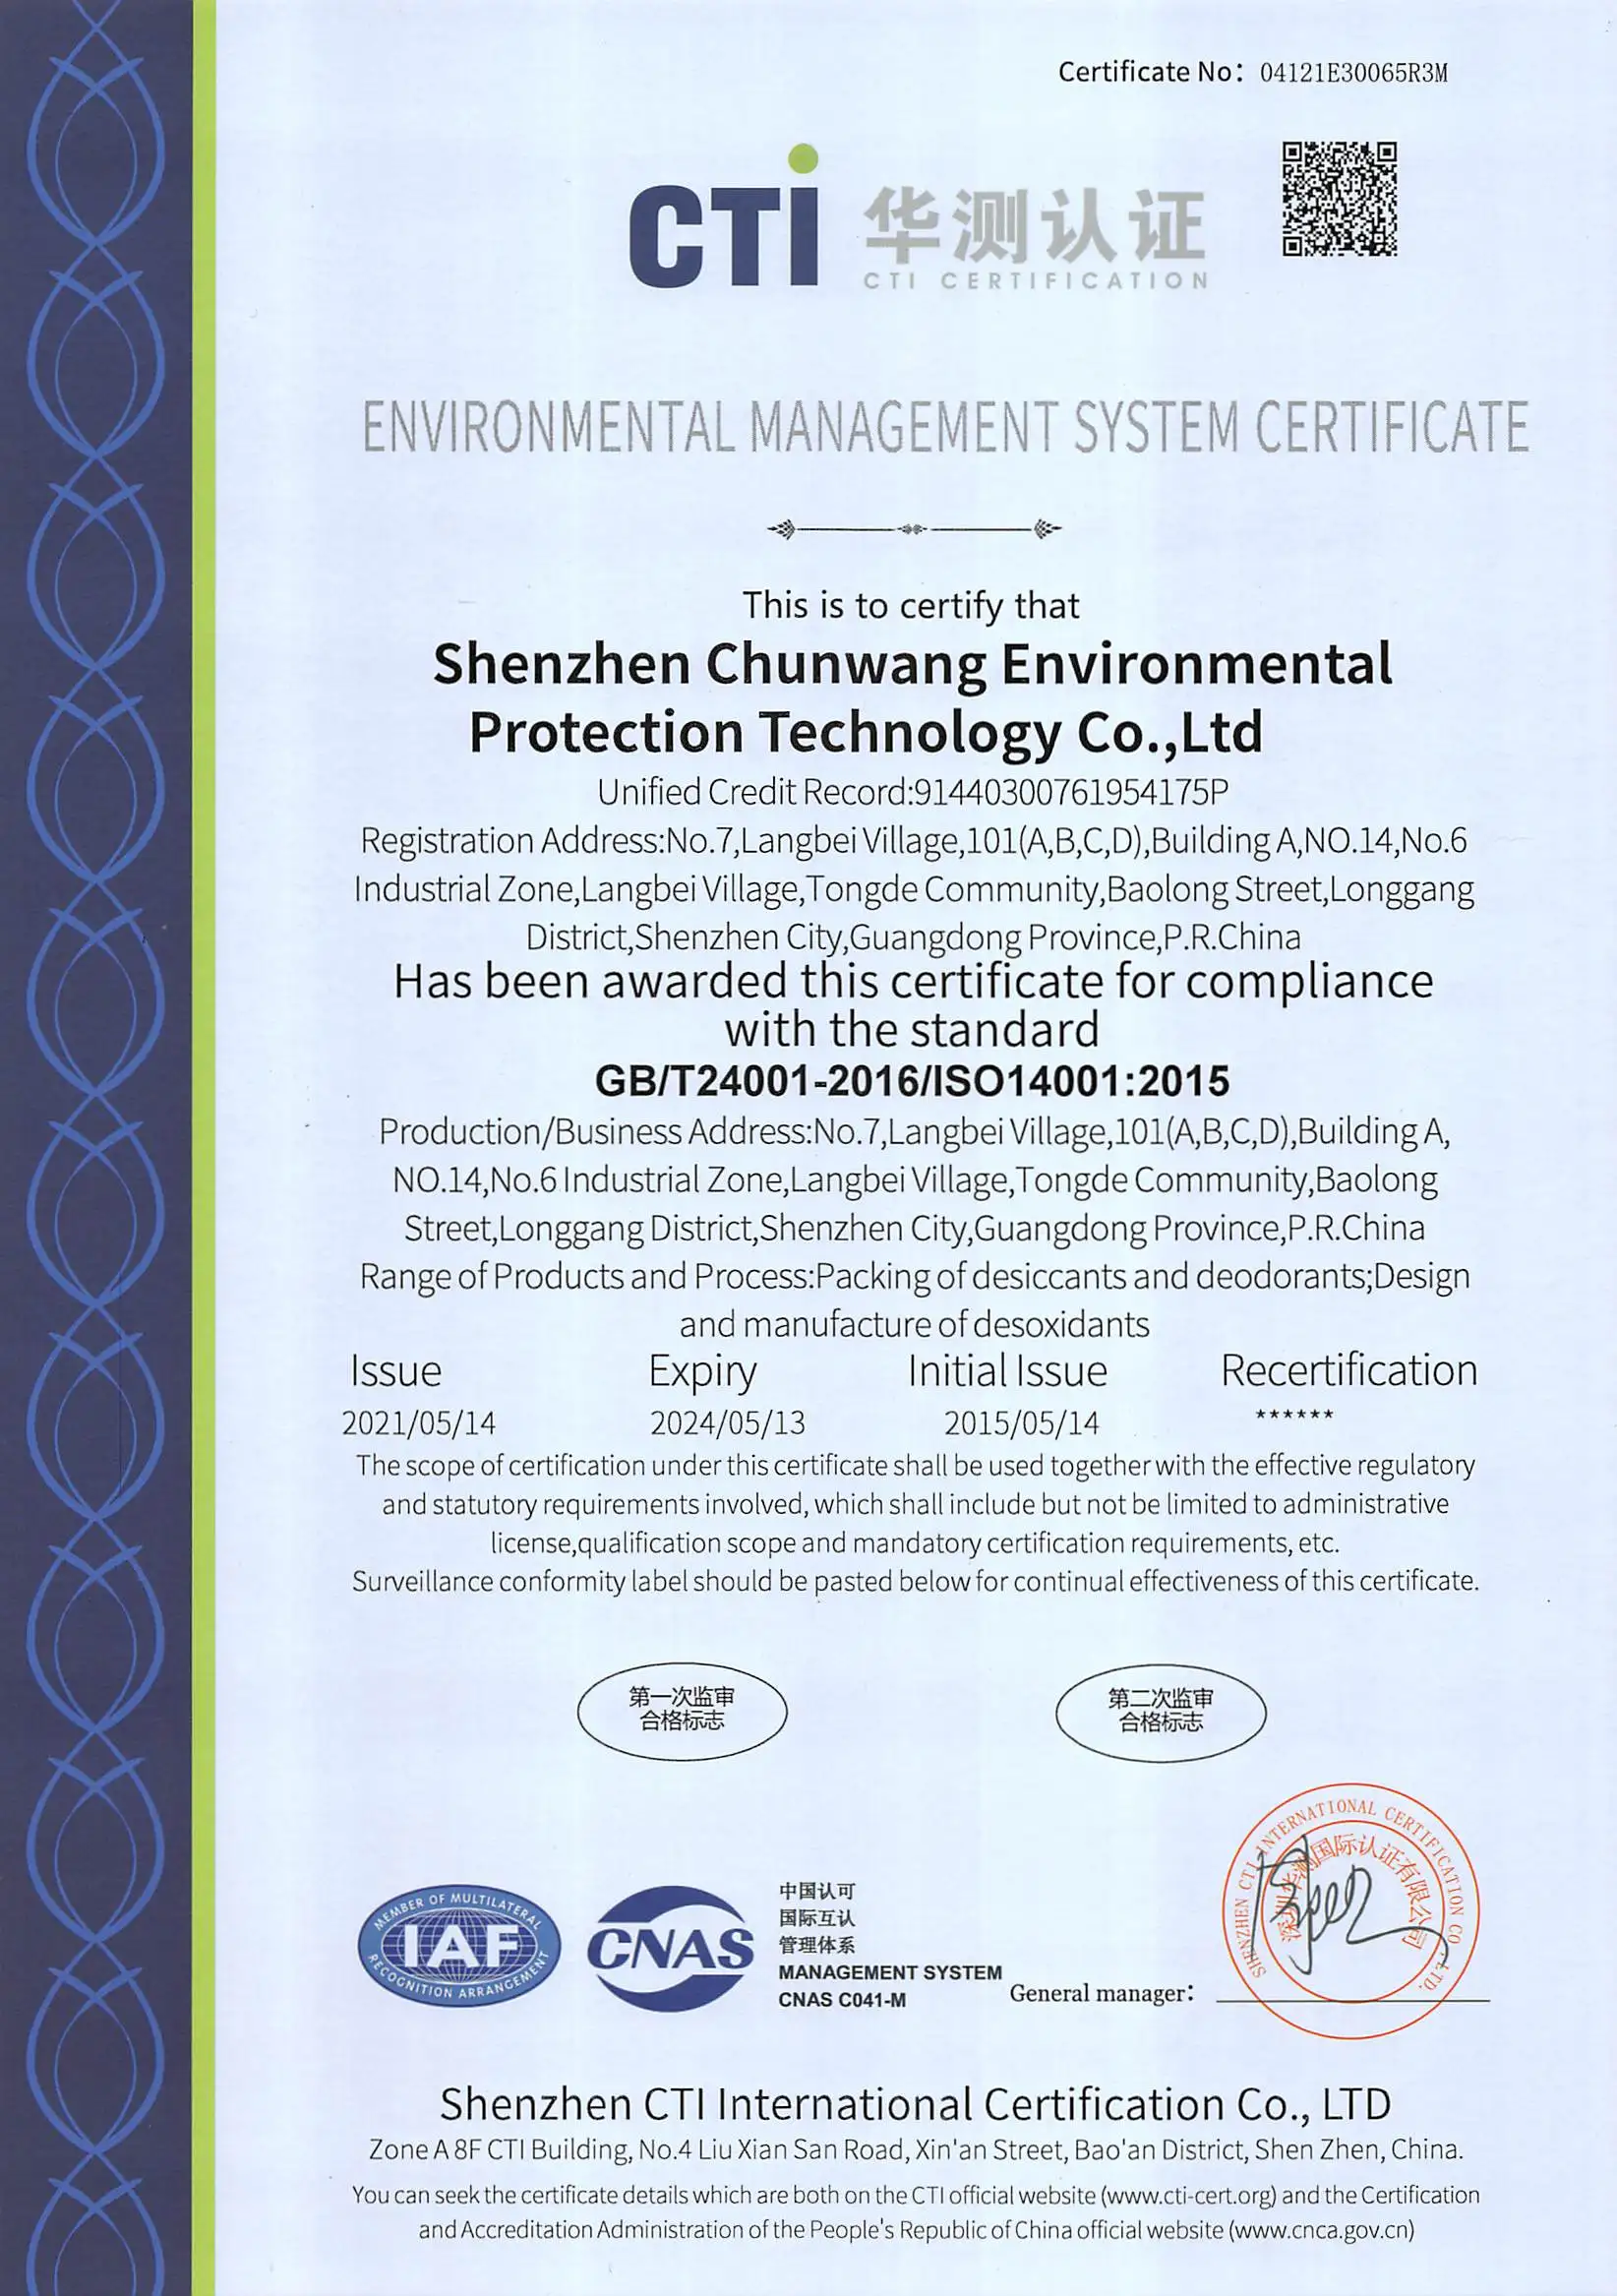 1000 Gramm wiederverwendbares Silikagel-Trockenmittel für Autoinnenraum  Hersteller und Lieferanten - China Factory - Chunwang